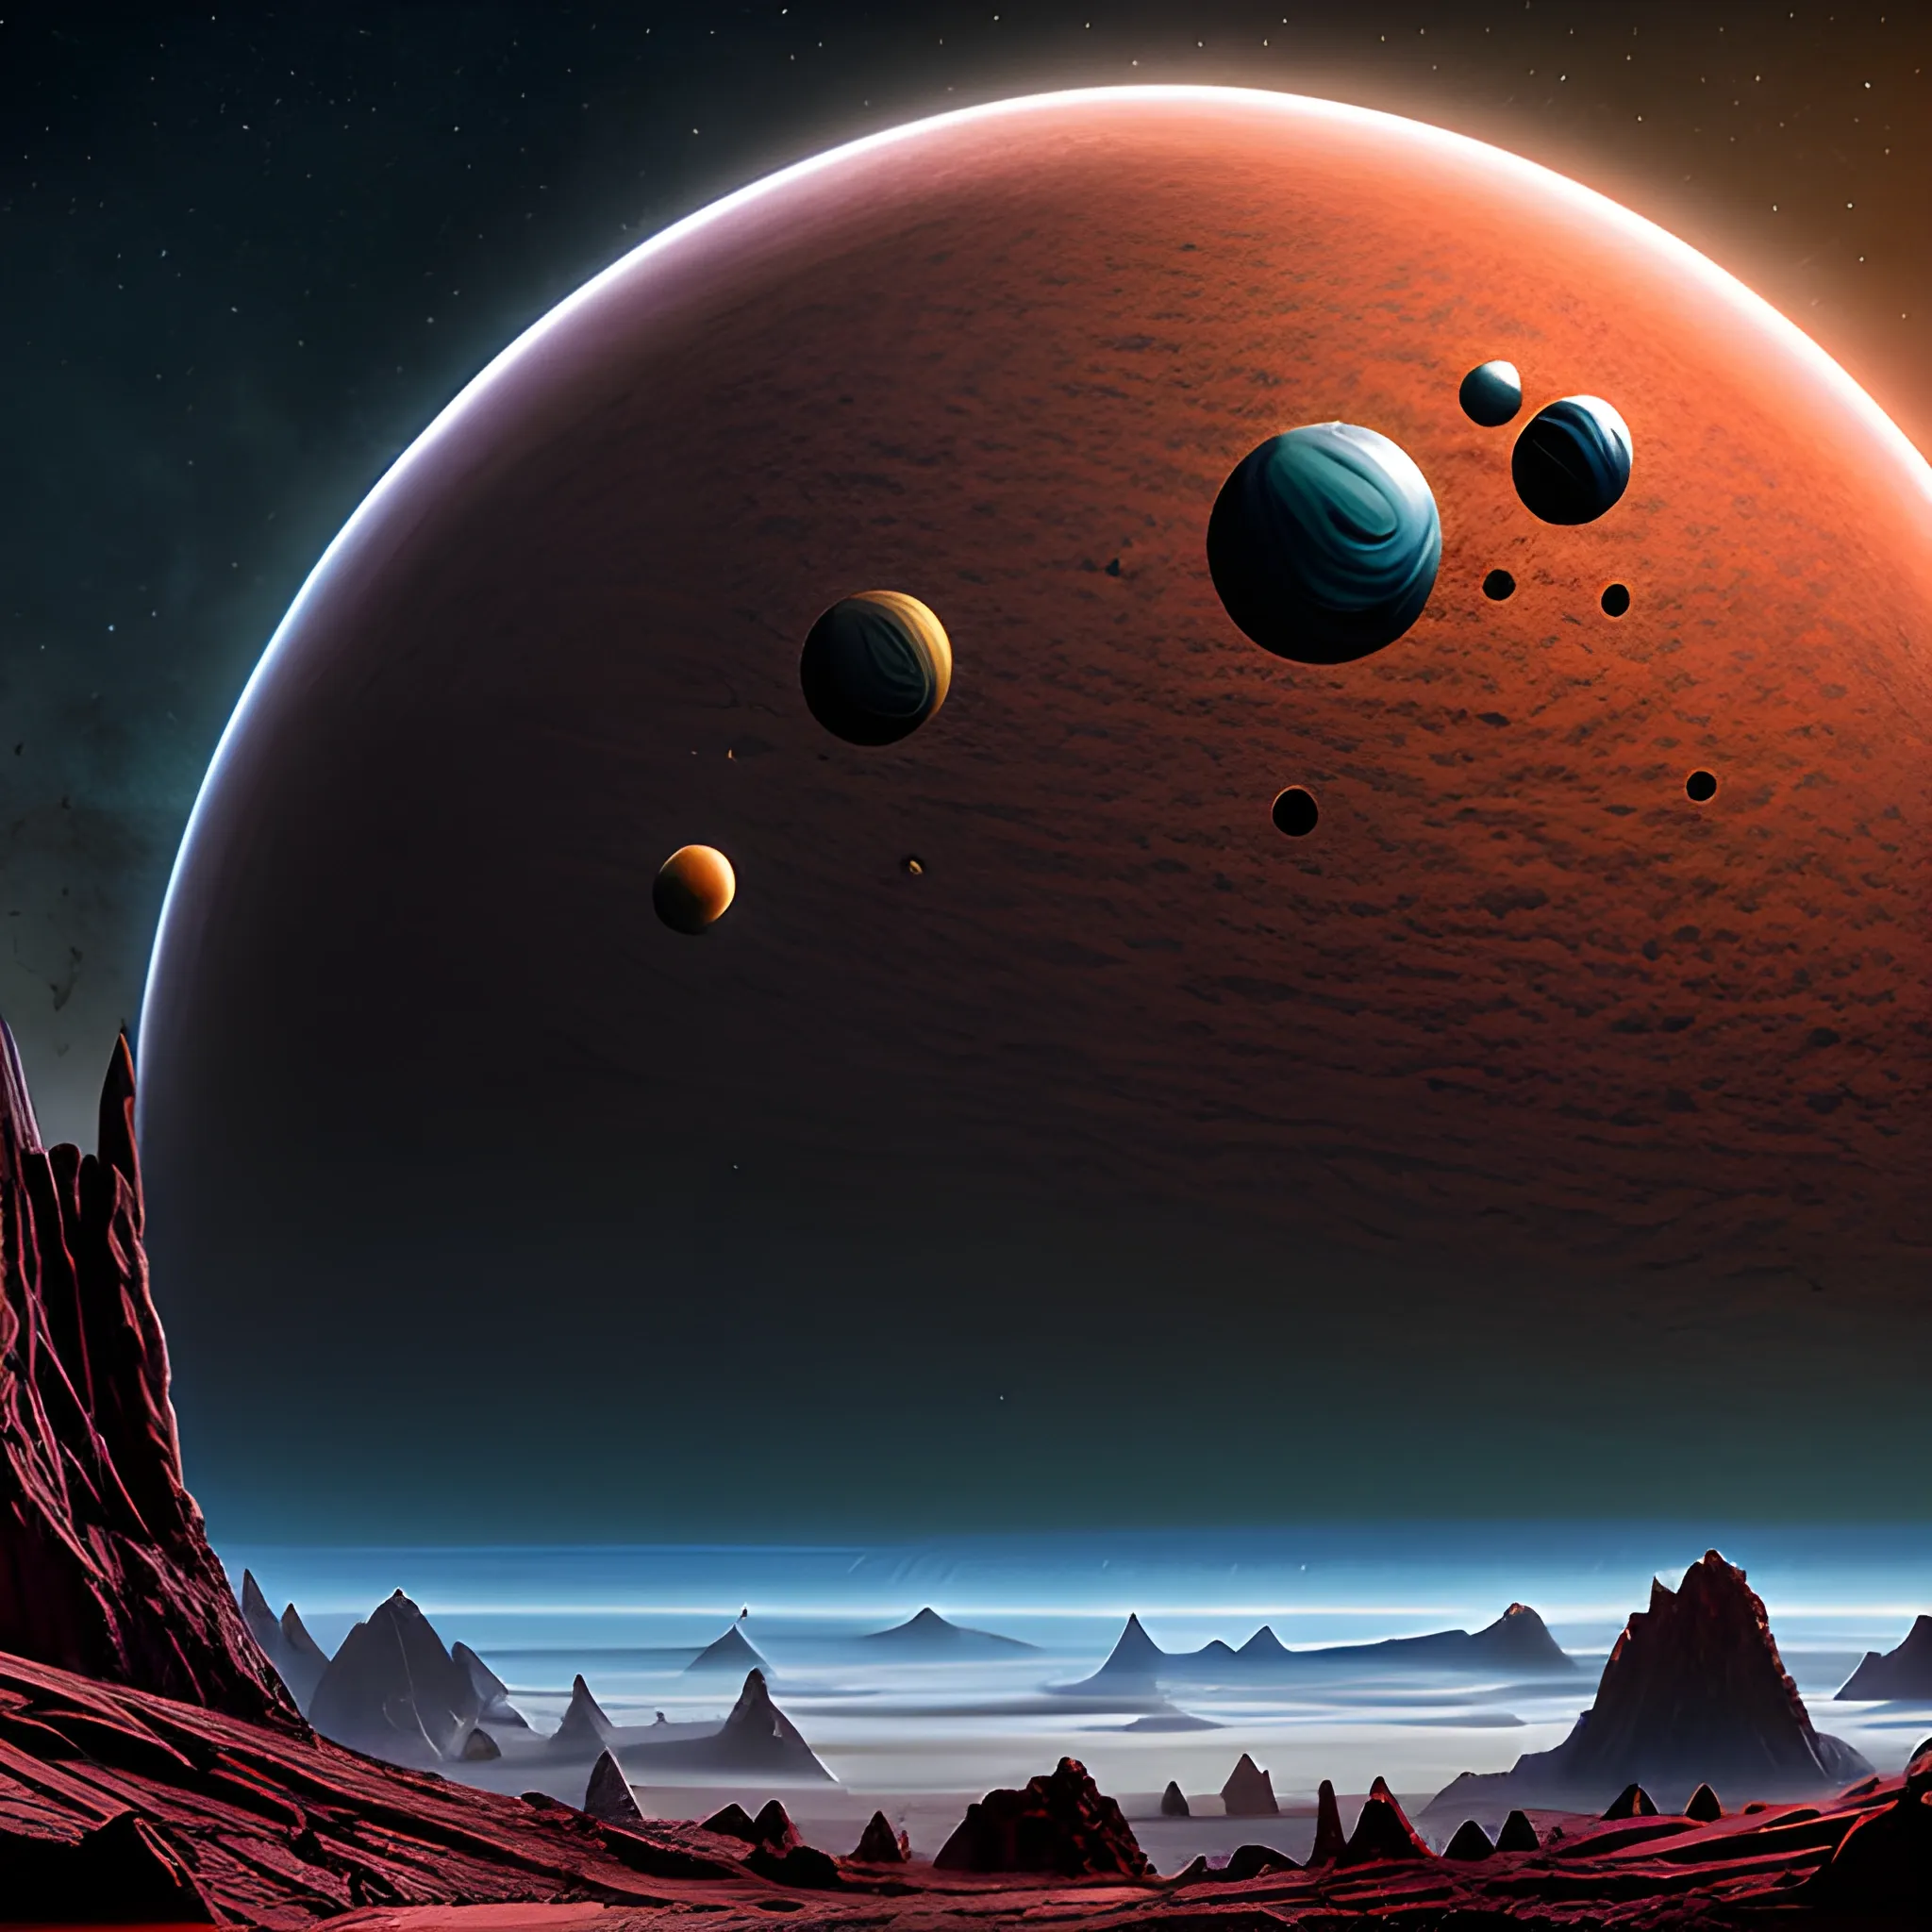 Alien planet landscape